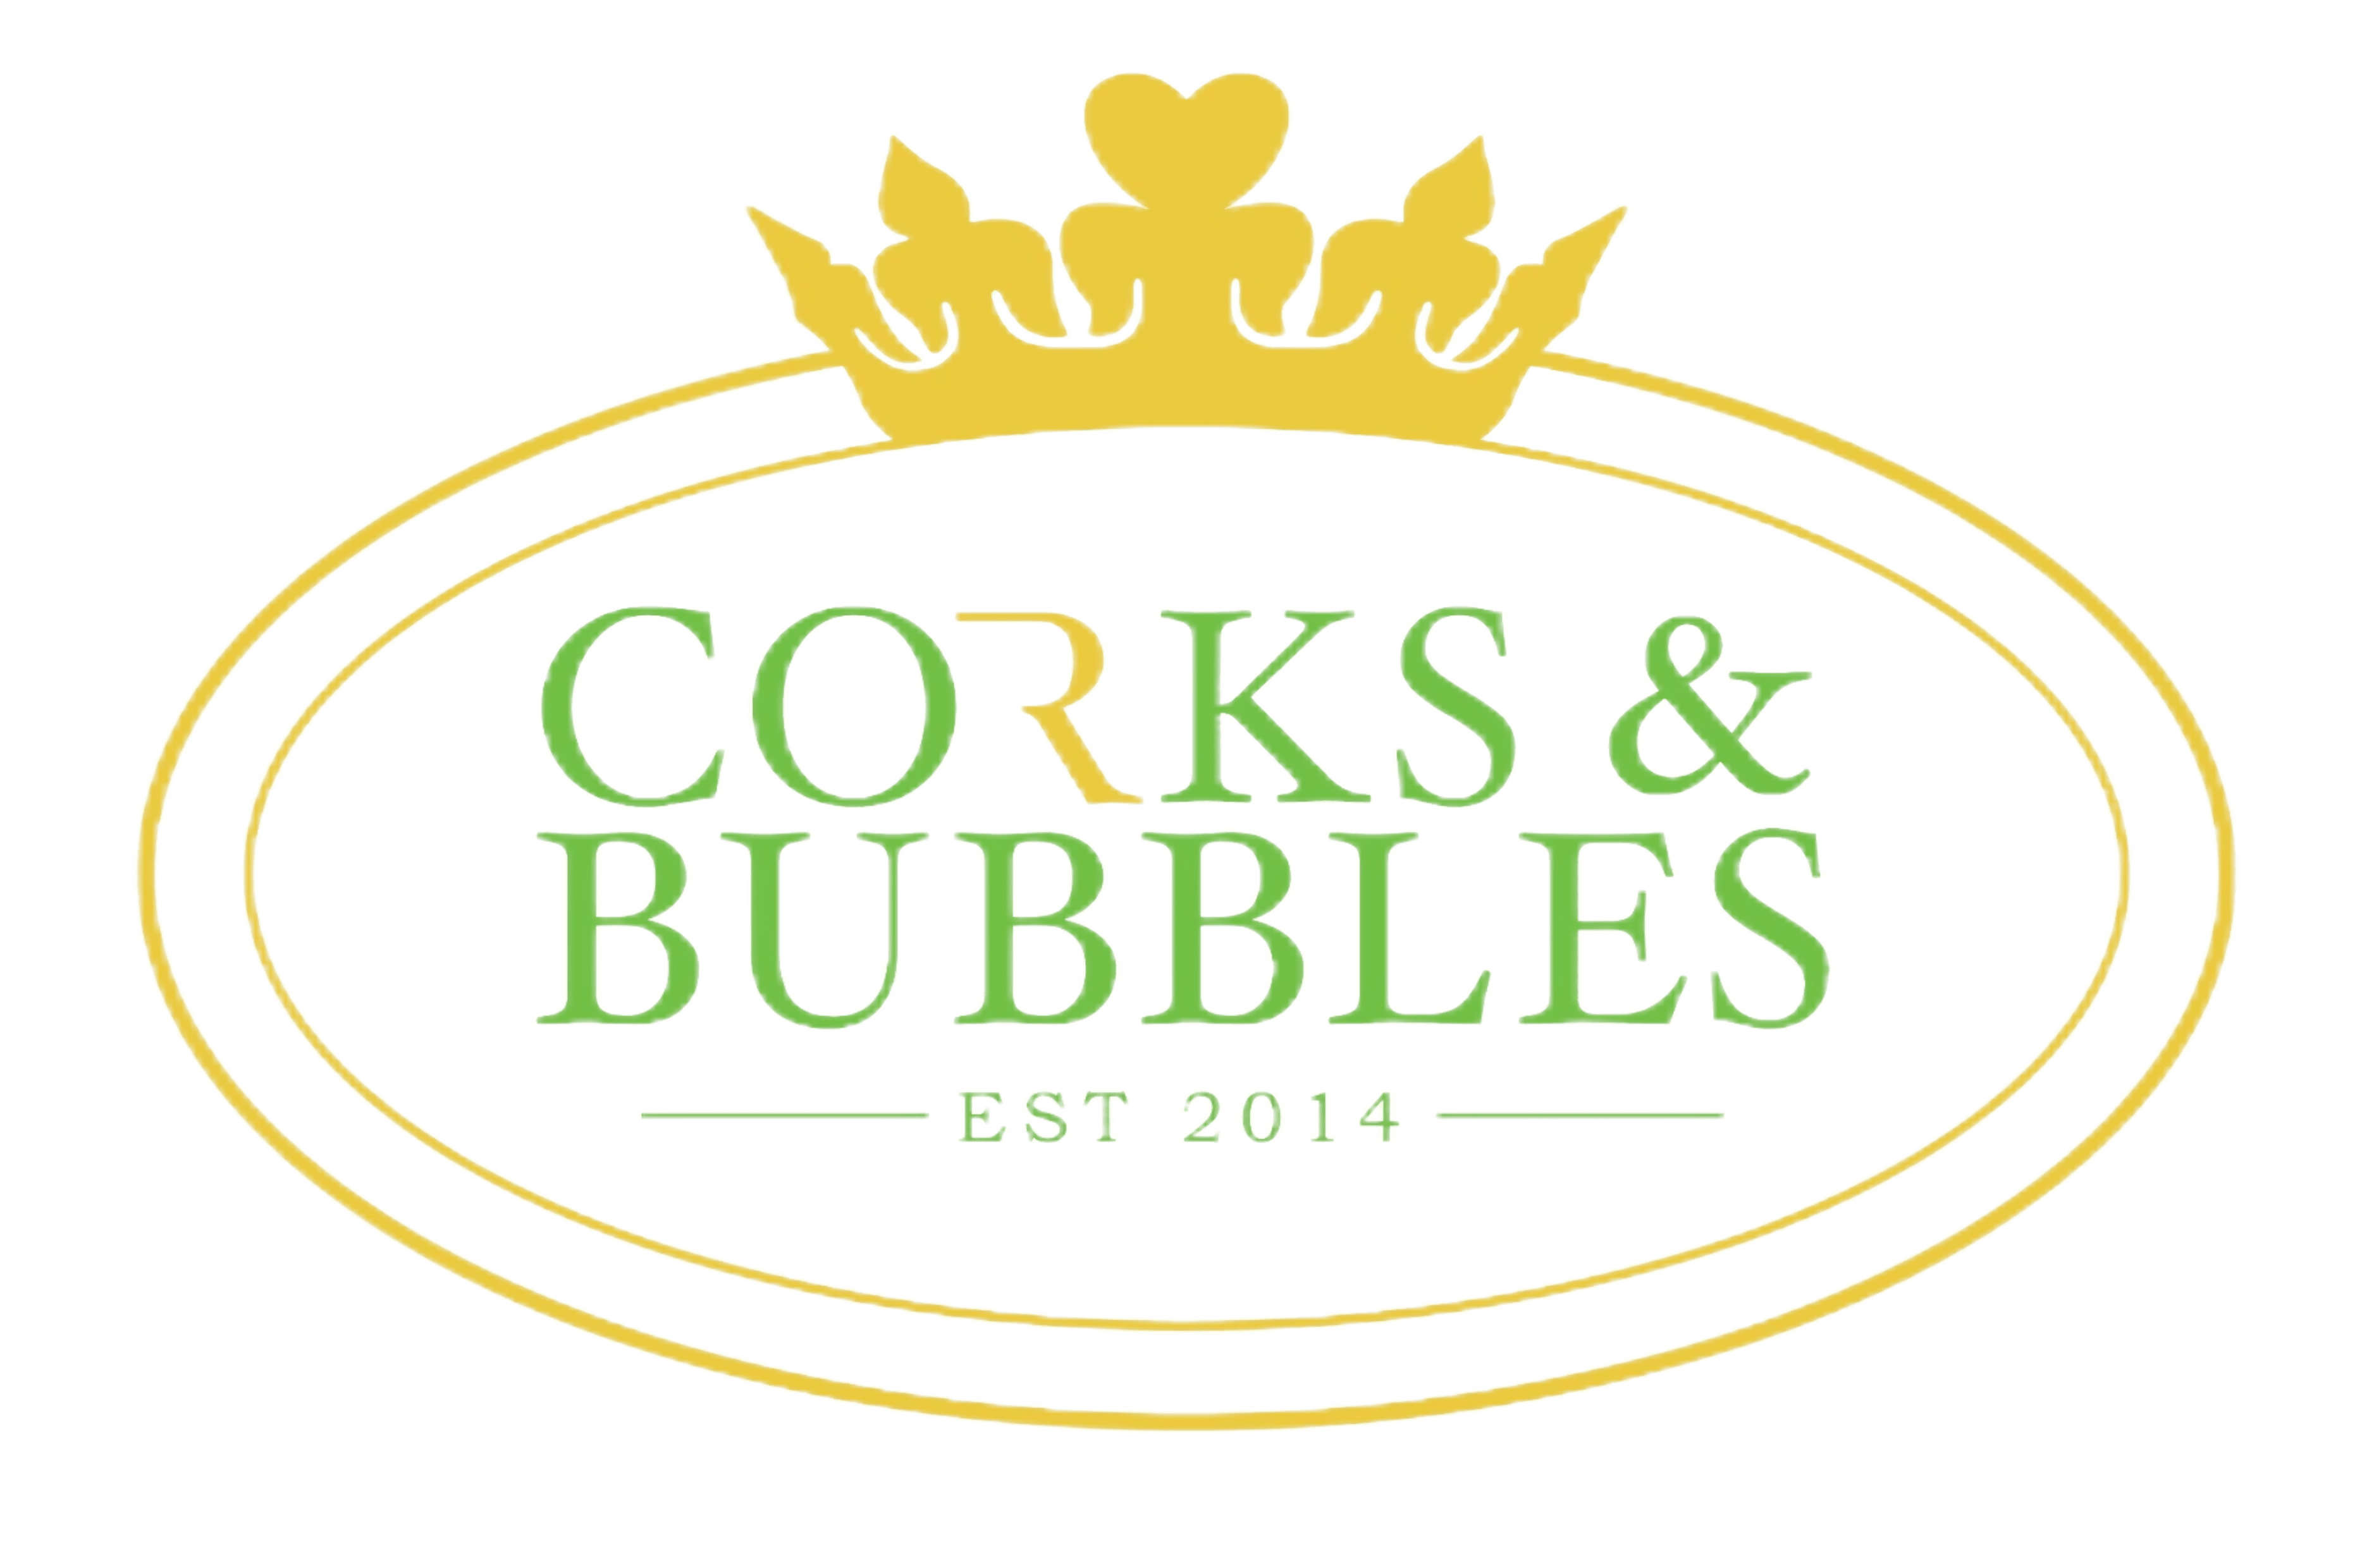 Corks & Bubbles